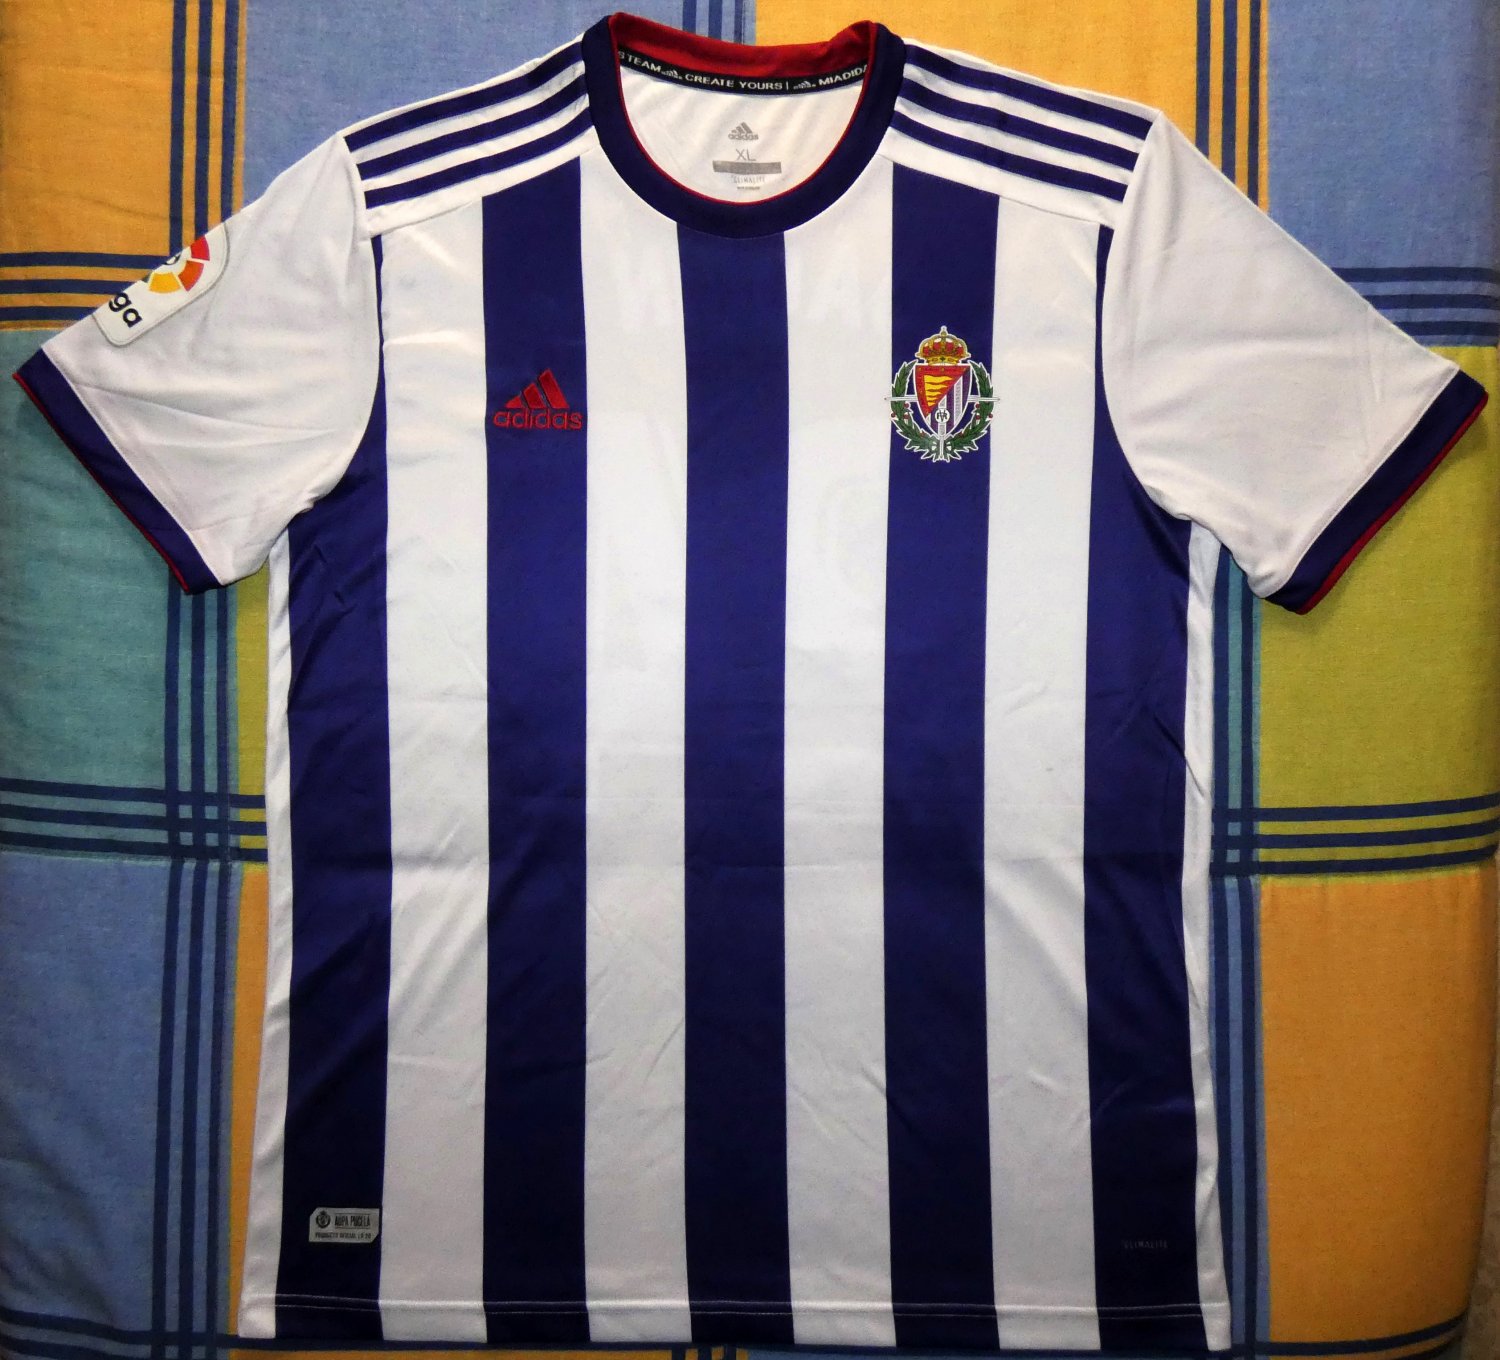 Valladolid Home Camiseta de Fútbol 2019 - 2020.